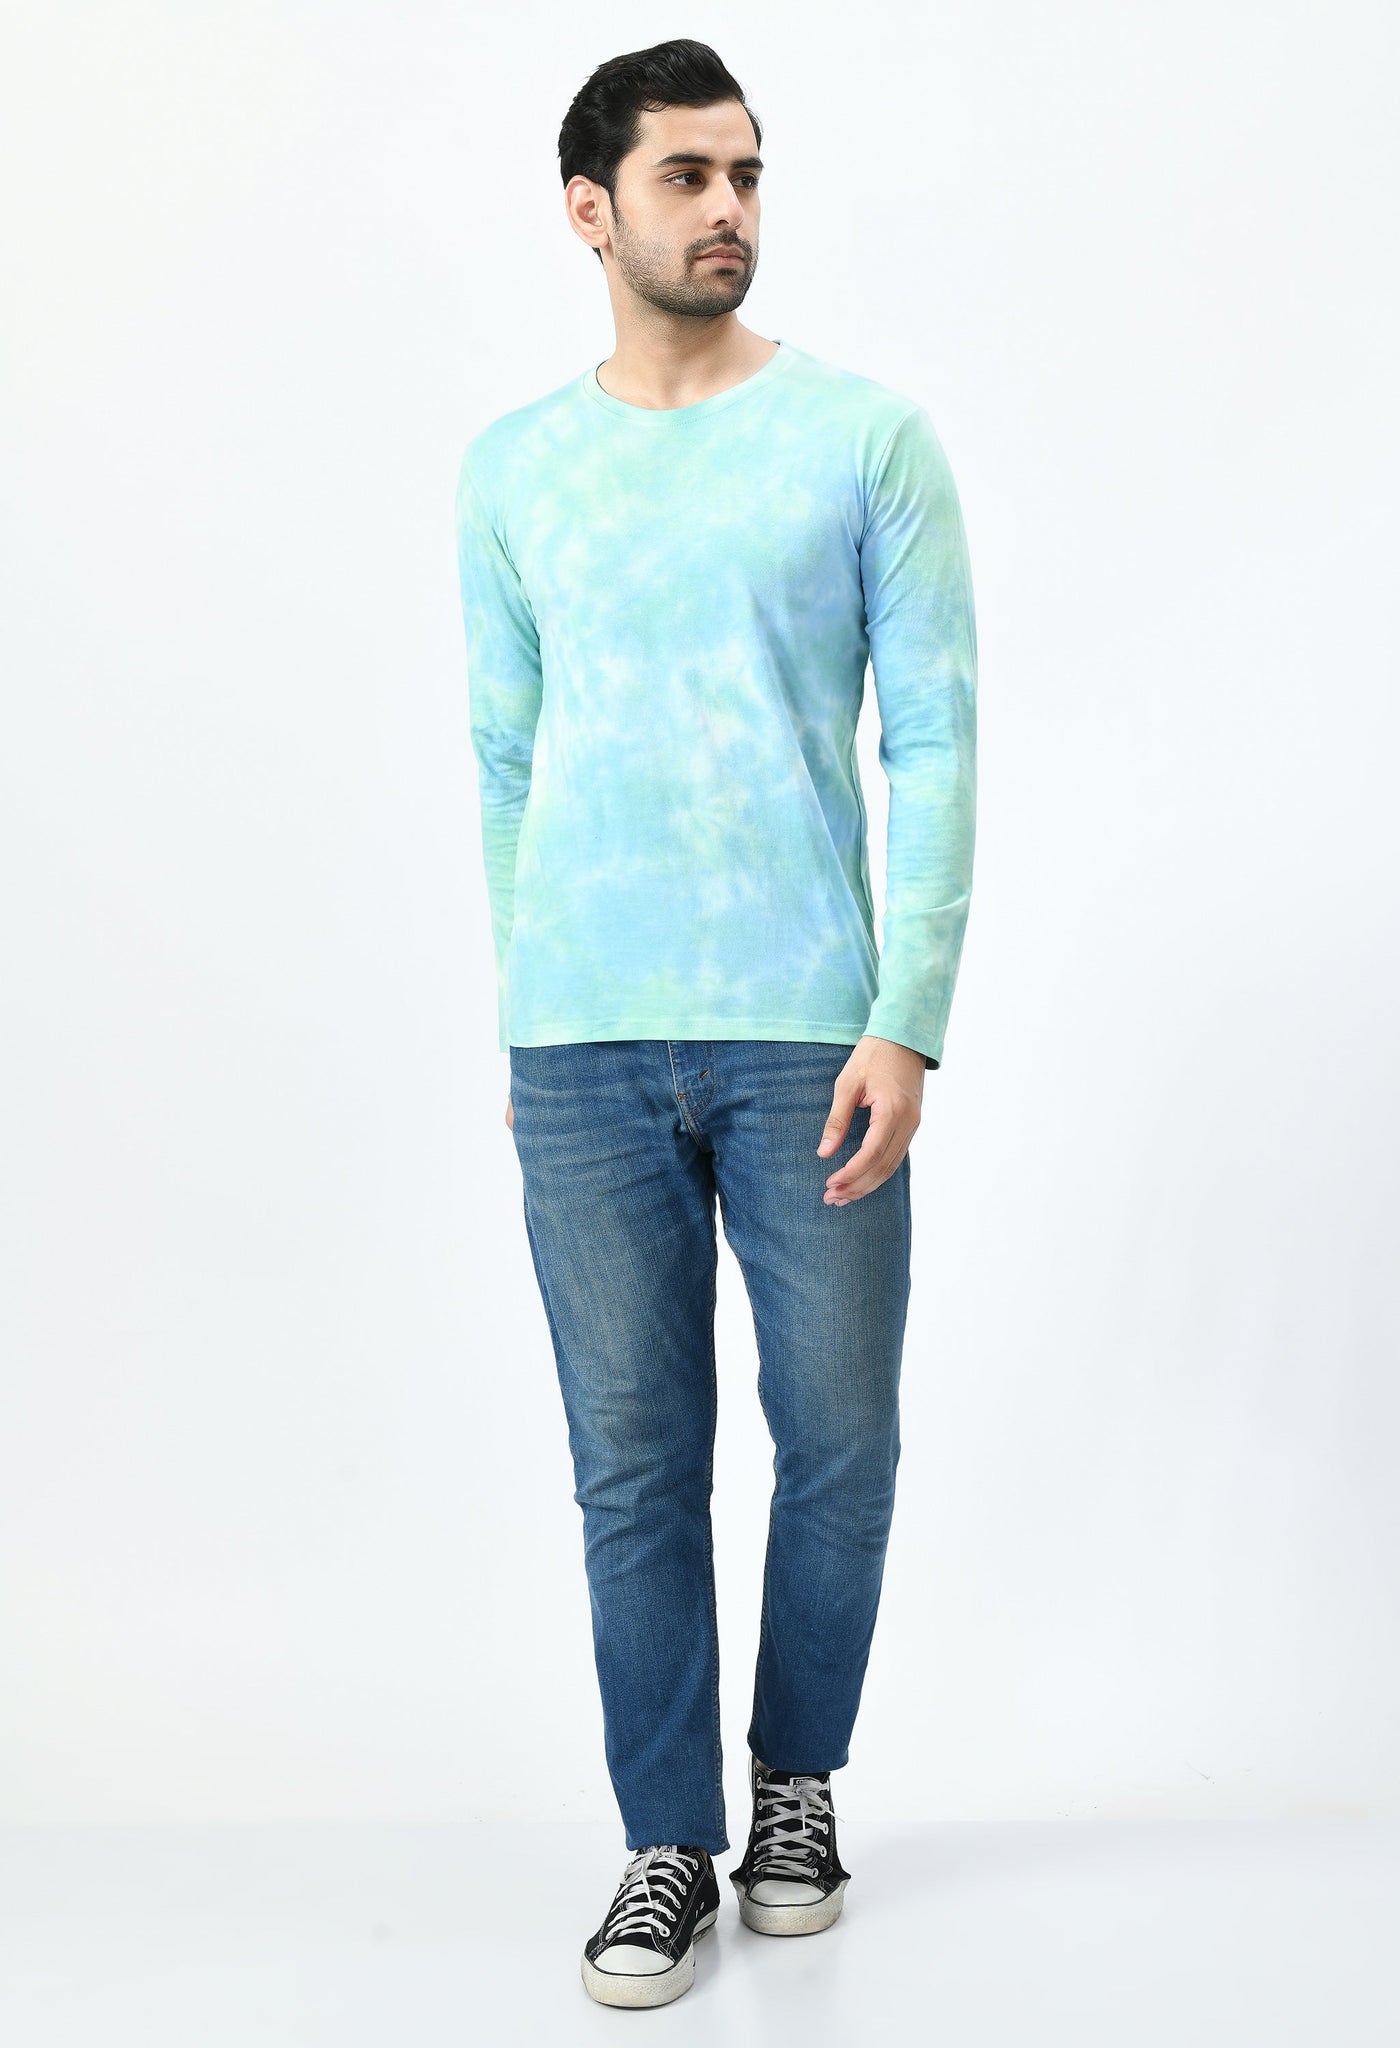 Green & Blue Unisex Tie-Dye T-shirt